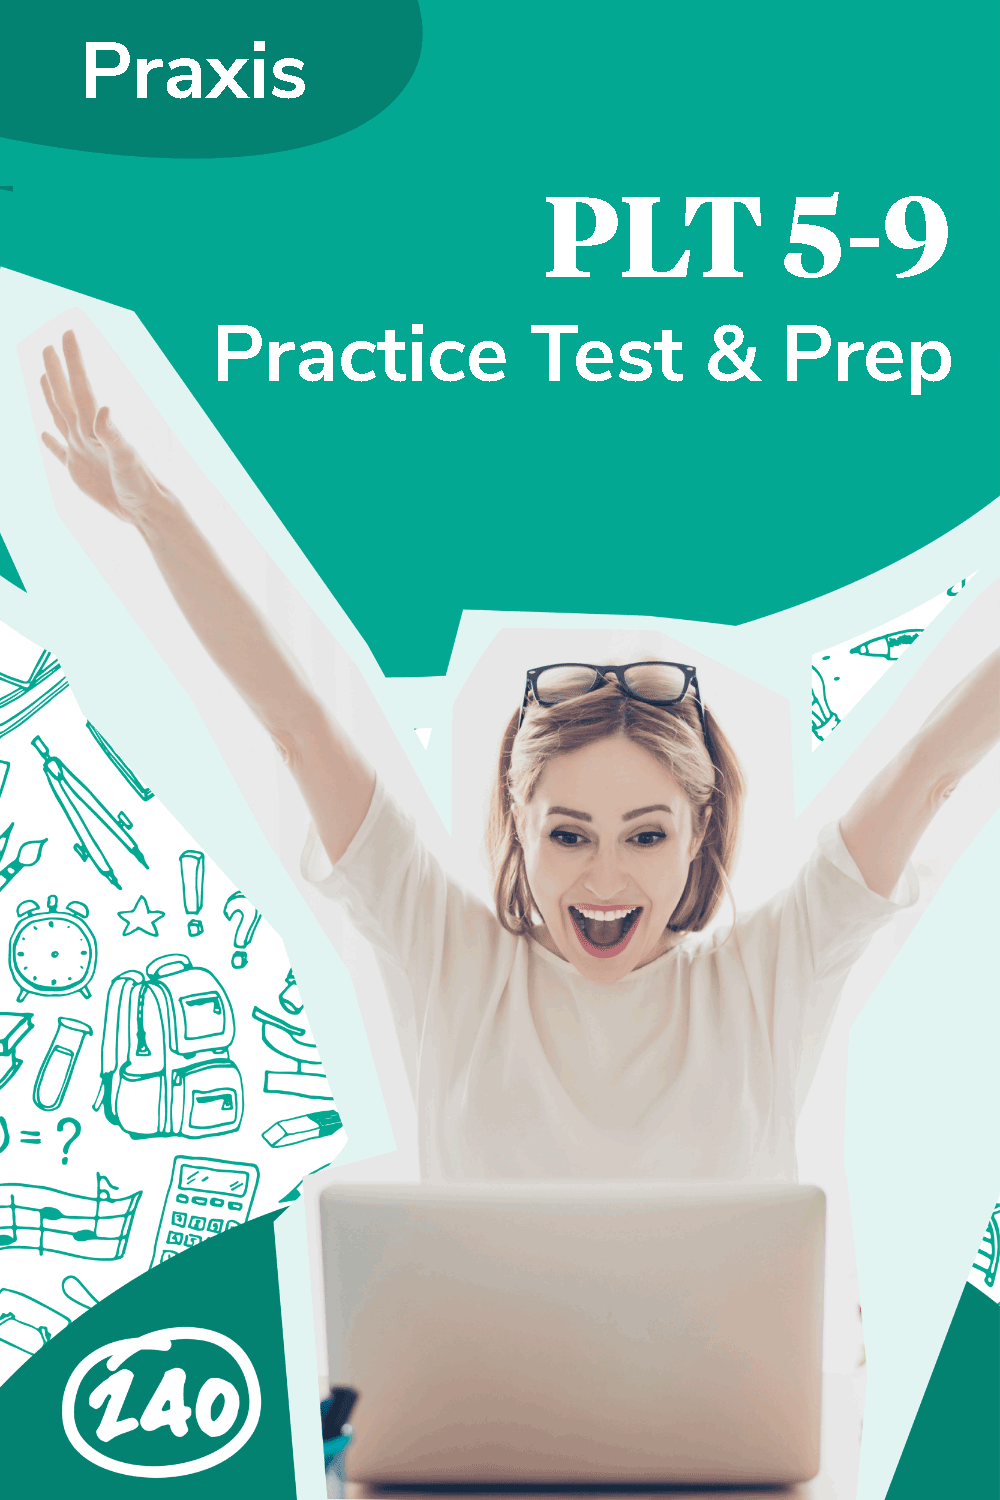 Praxis PLT 5-9 Test Information